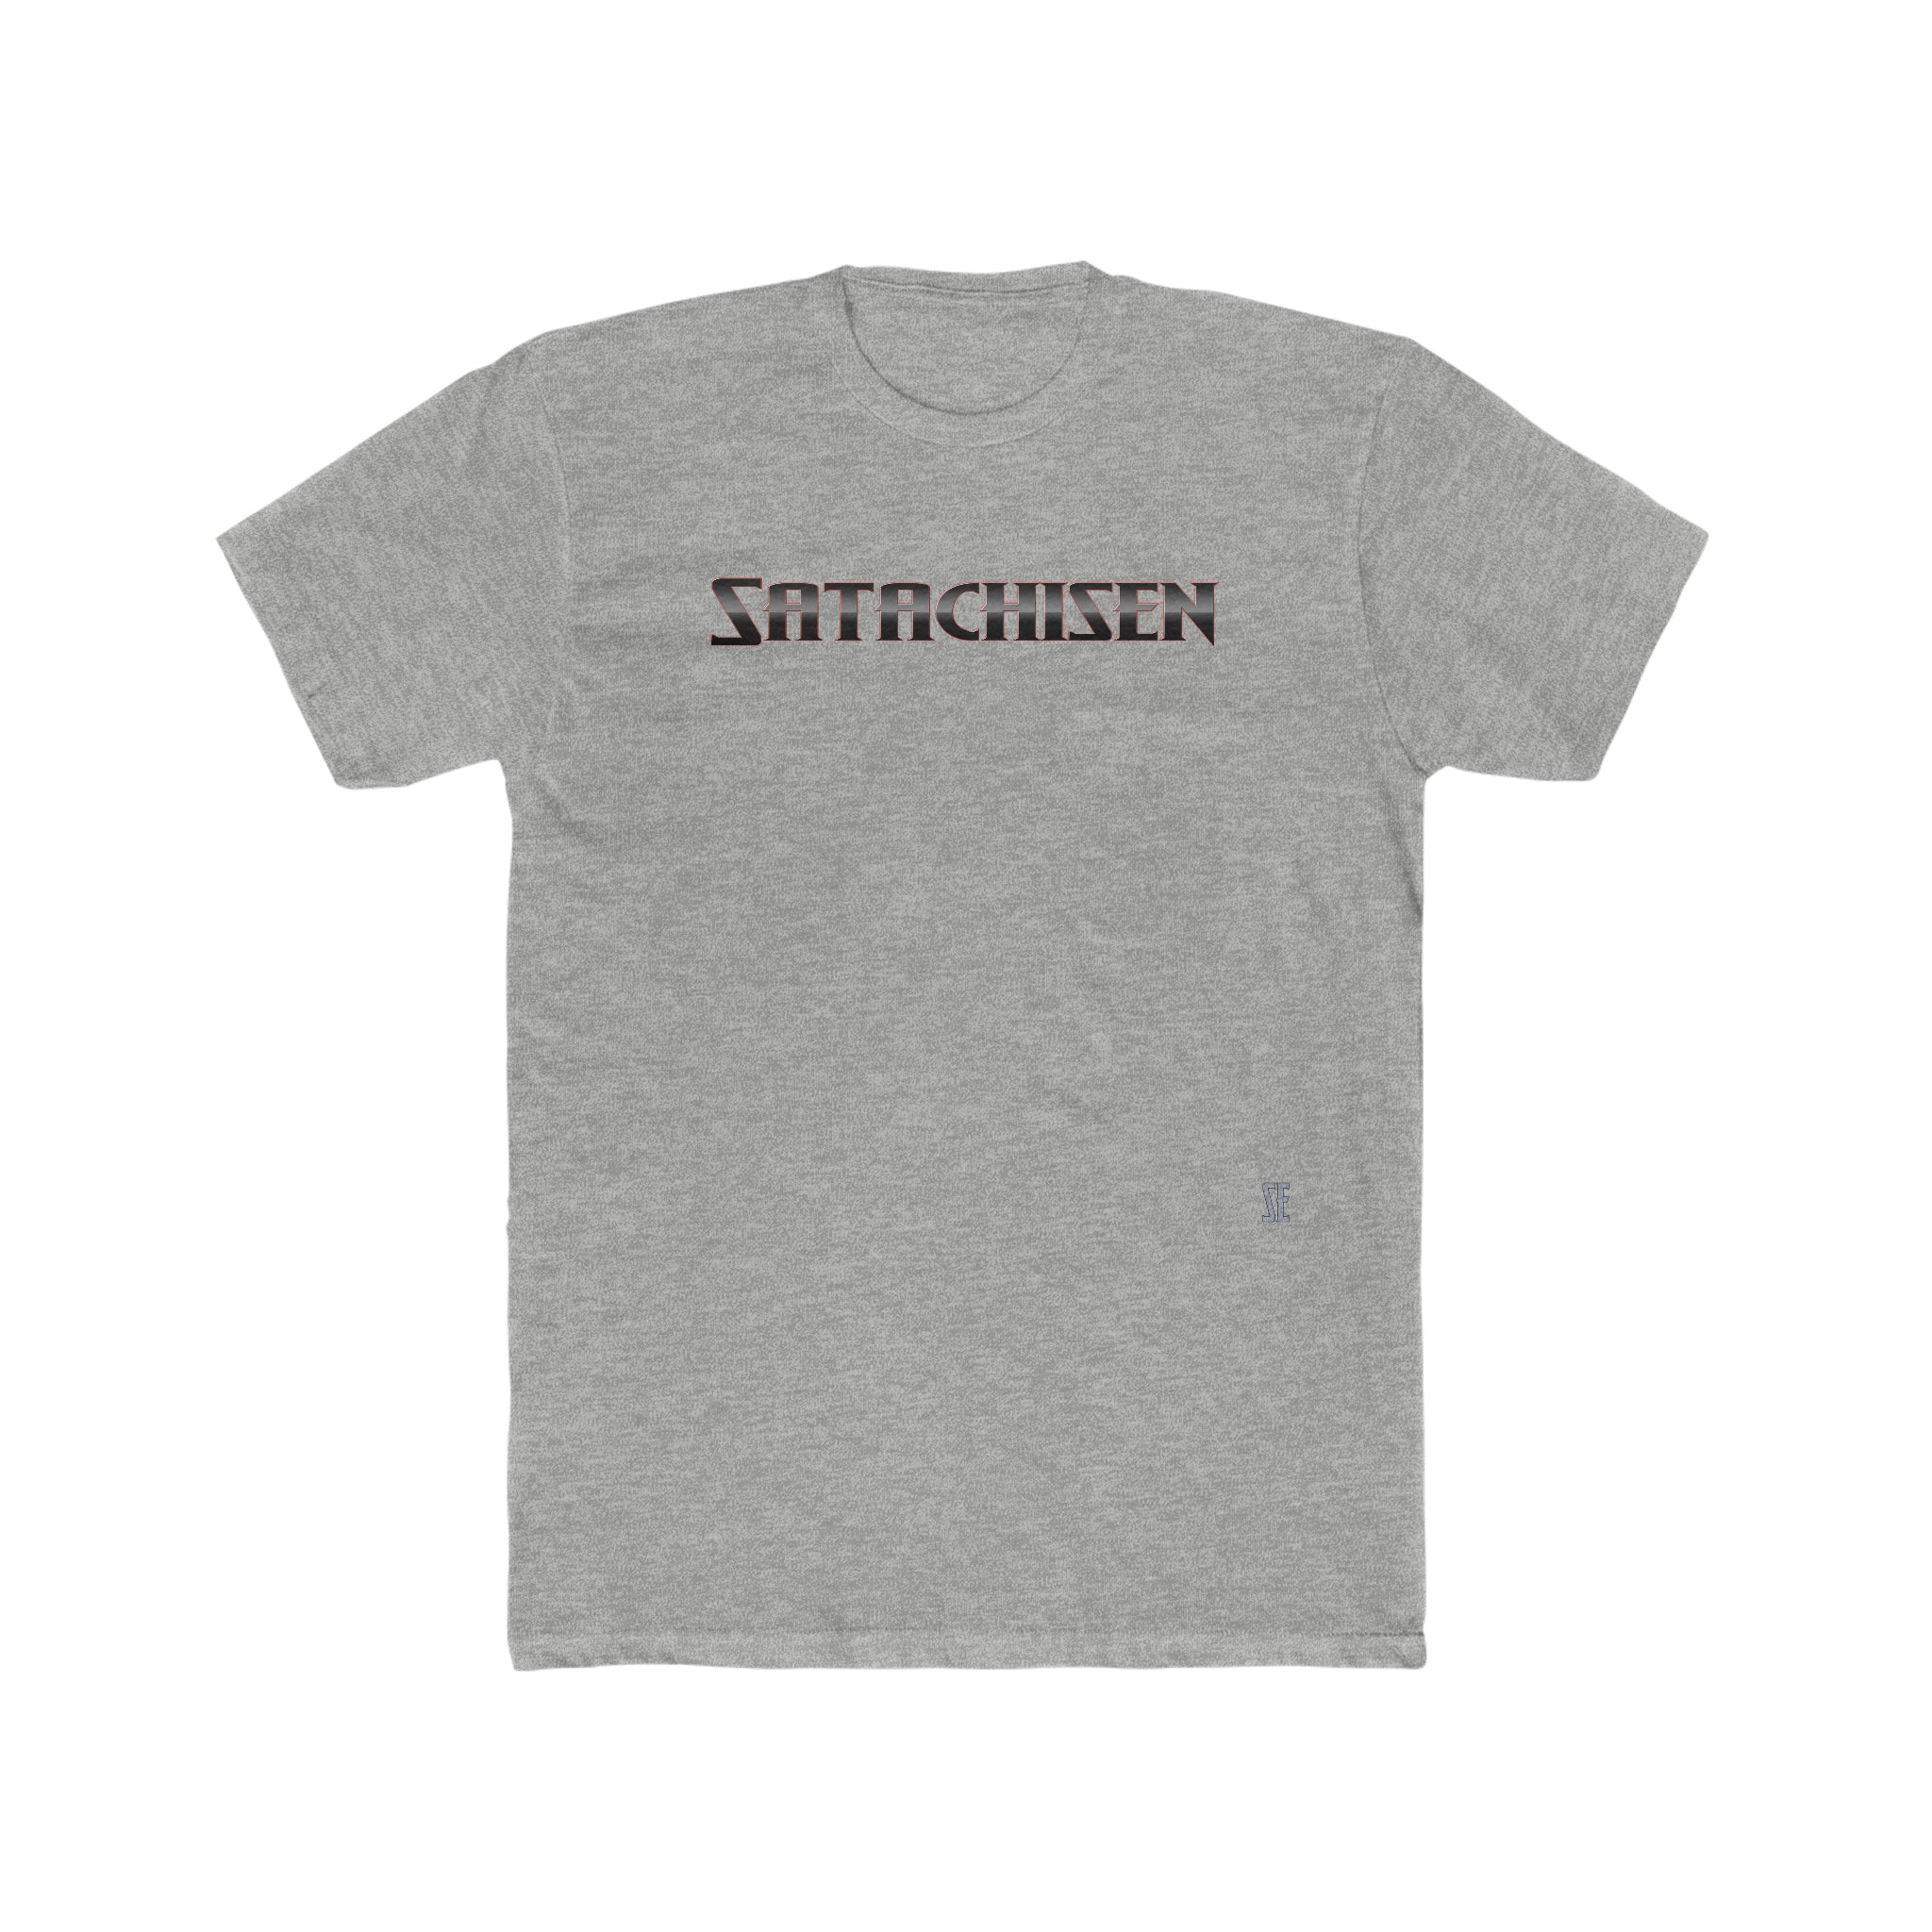 Satachisen T-Shirt